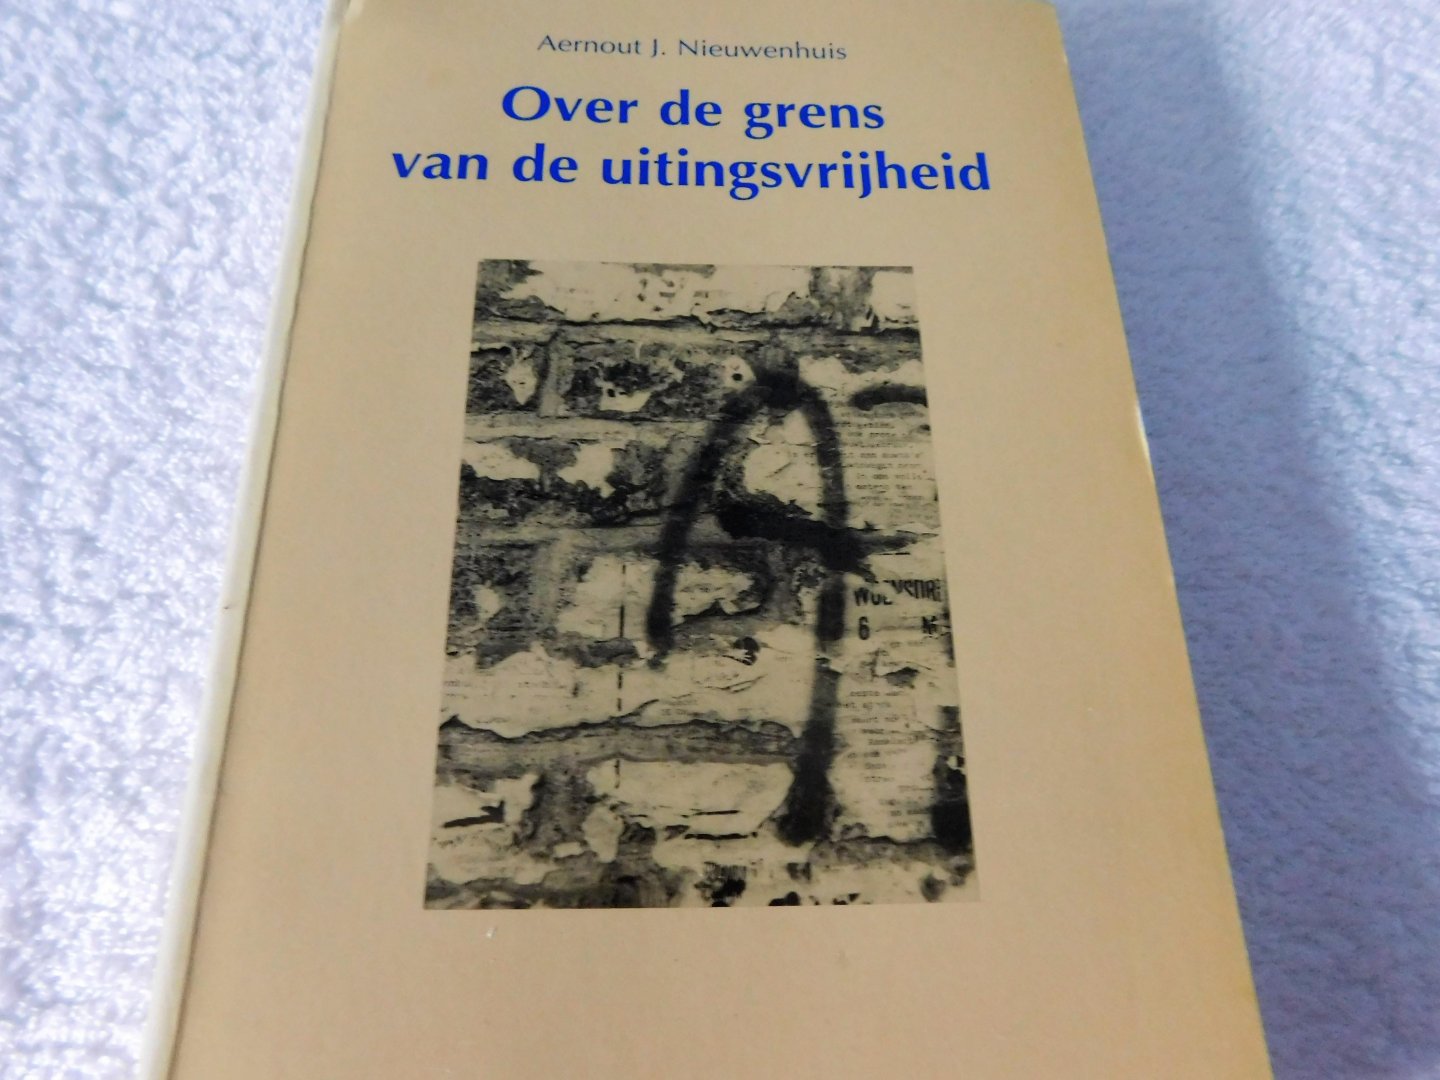 J.Nieuwenhuis - Over de grens van de uitingsvrijheid [9789069162539]